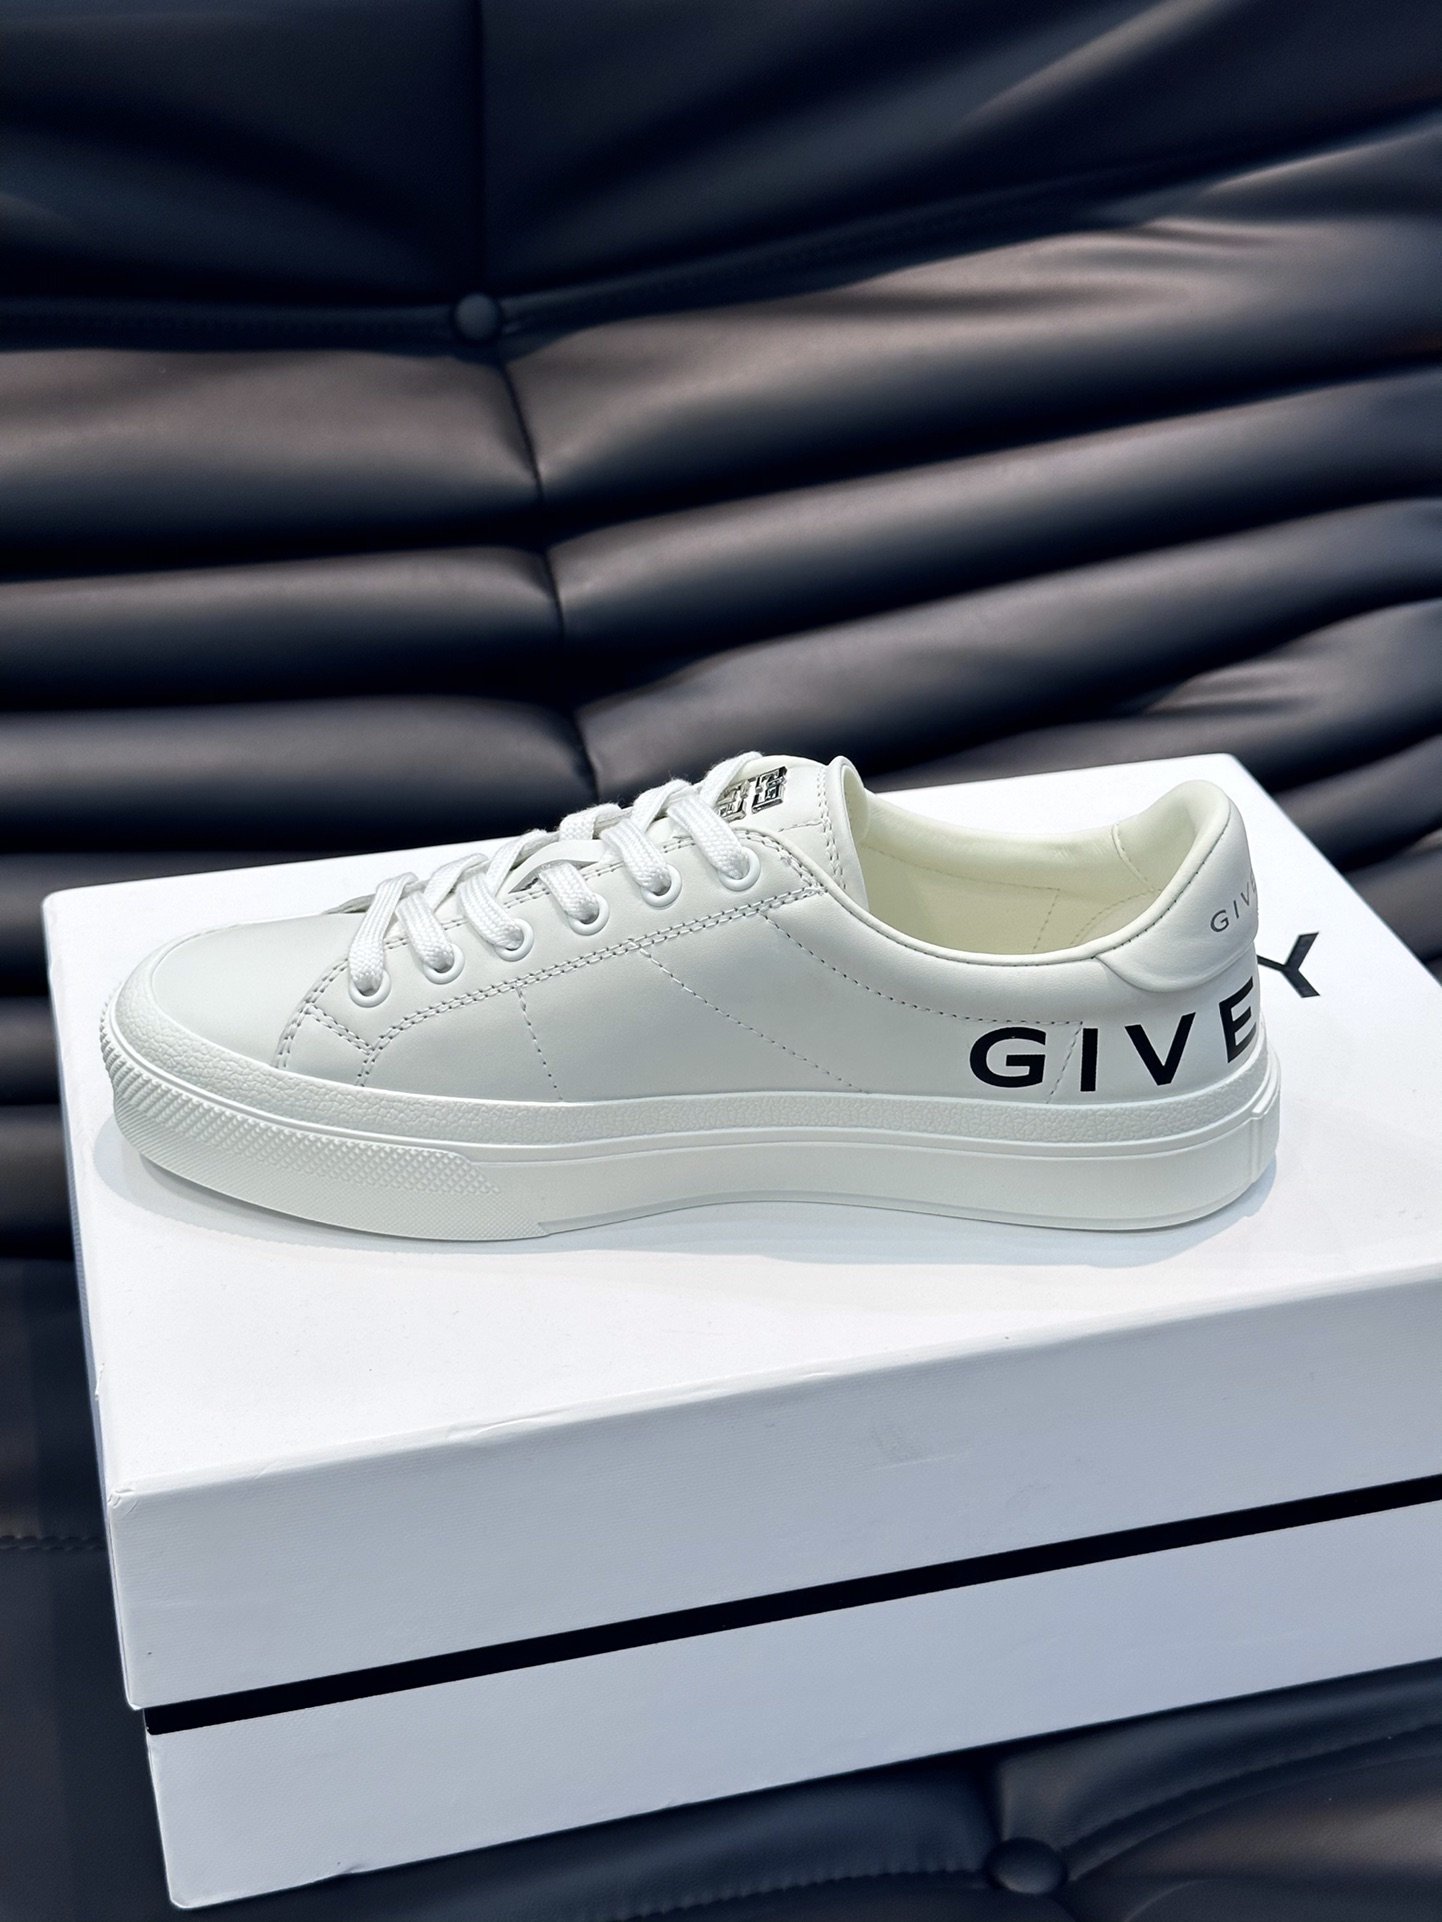 Gv*y全新GIV1男士低帮休闲板鞋